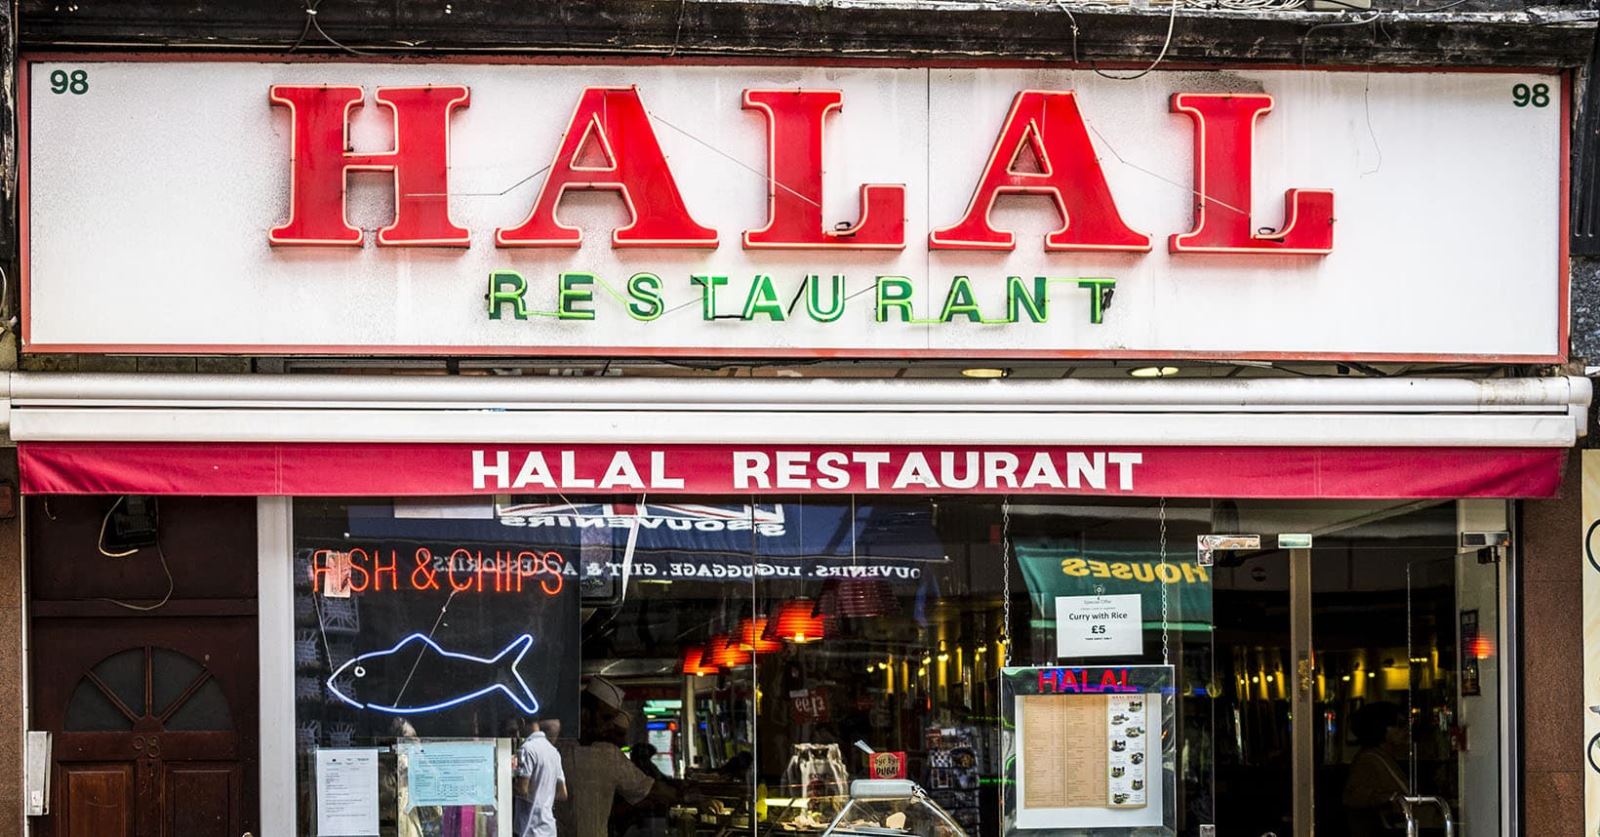 چالش غذای حلال در کشورهای غیر مسلمان